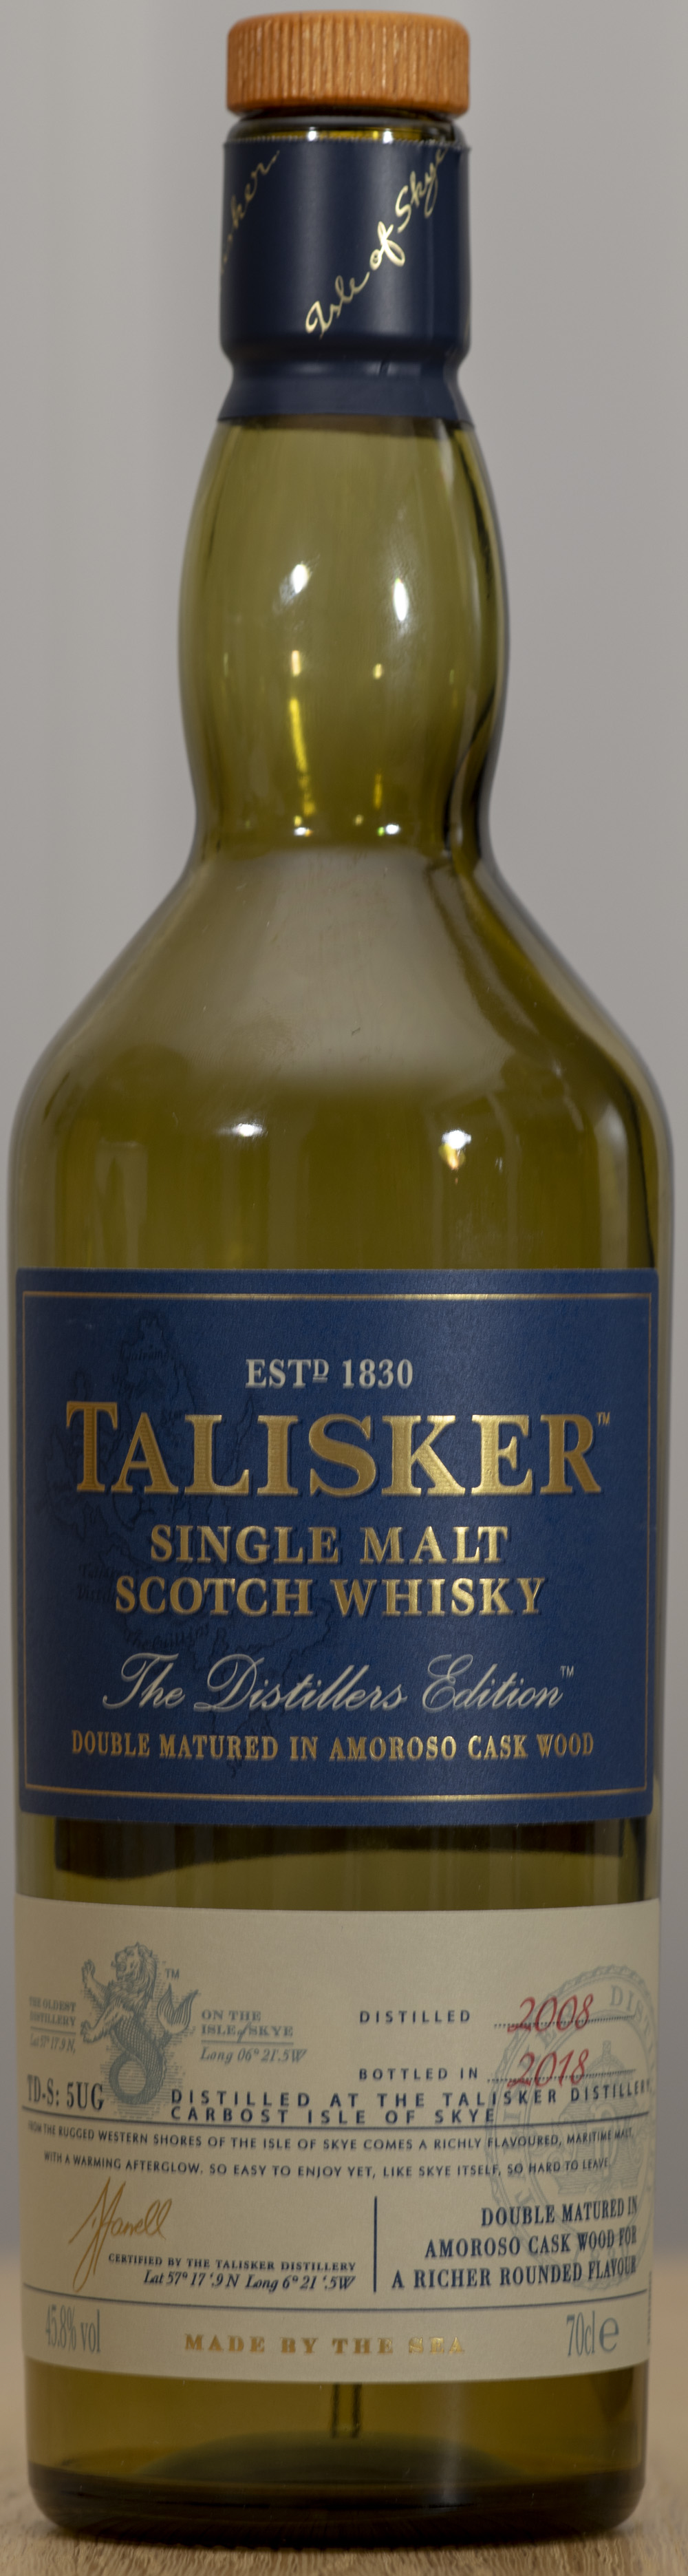 Billede: PHC_1582 - Talisker Distillers Edition - bottle front.jpg